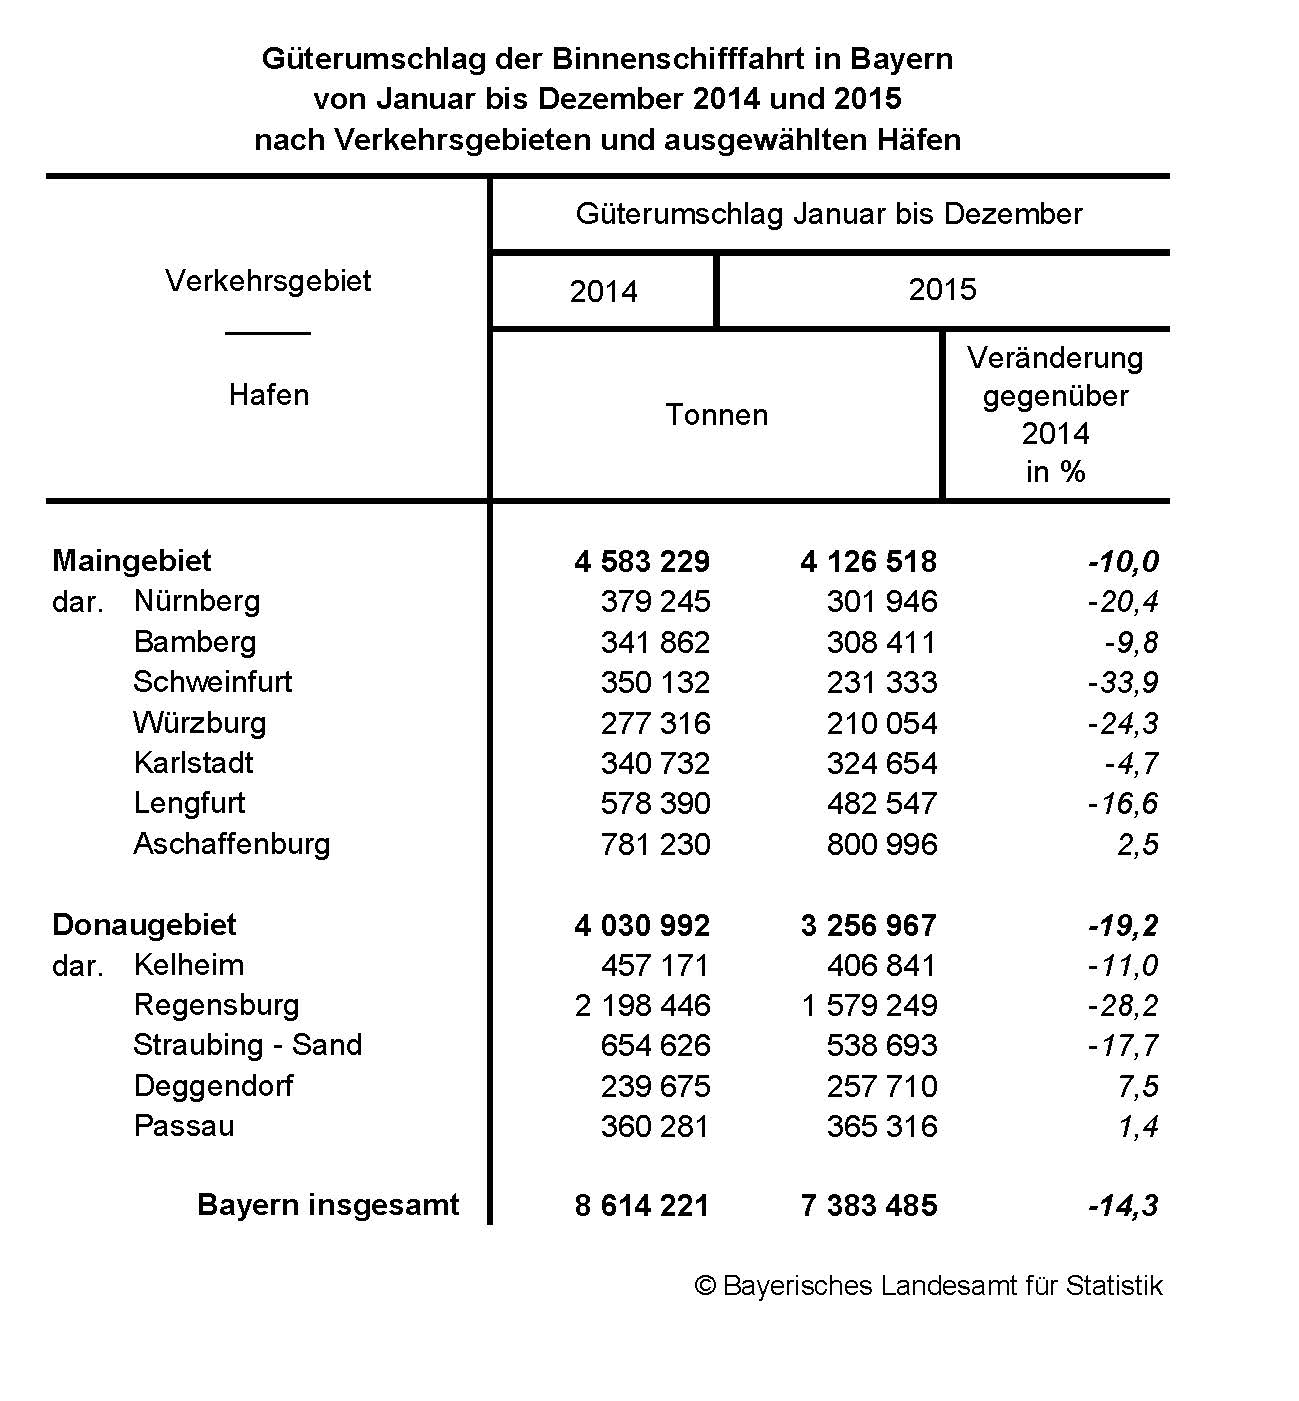 Güterumschlag der Binnenschifffahrt in Bayern von Januar bis Dezember 2014 und 2015 nach Verkehrsgebieten und ausgewählten Häfen